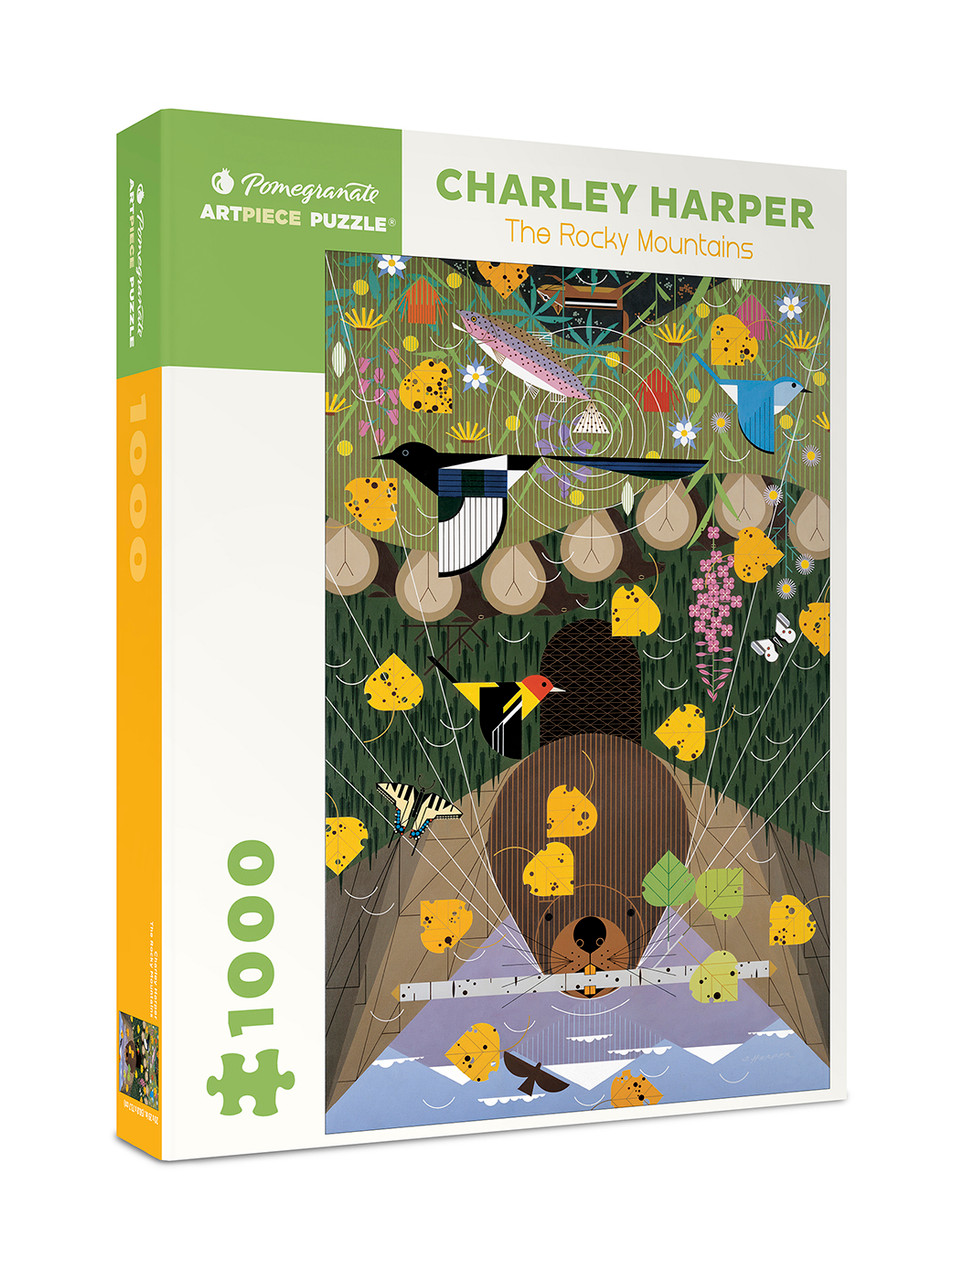 Charley Harper Sierra Range 1000 Piece Jigsaw Puzzle